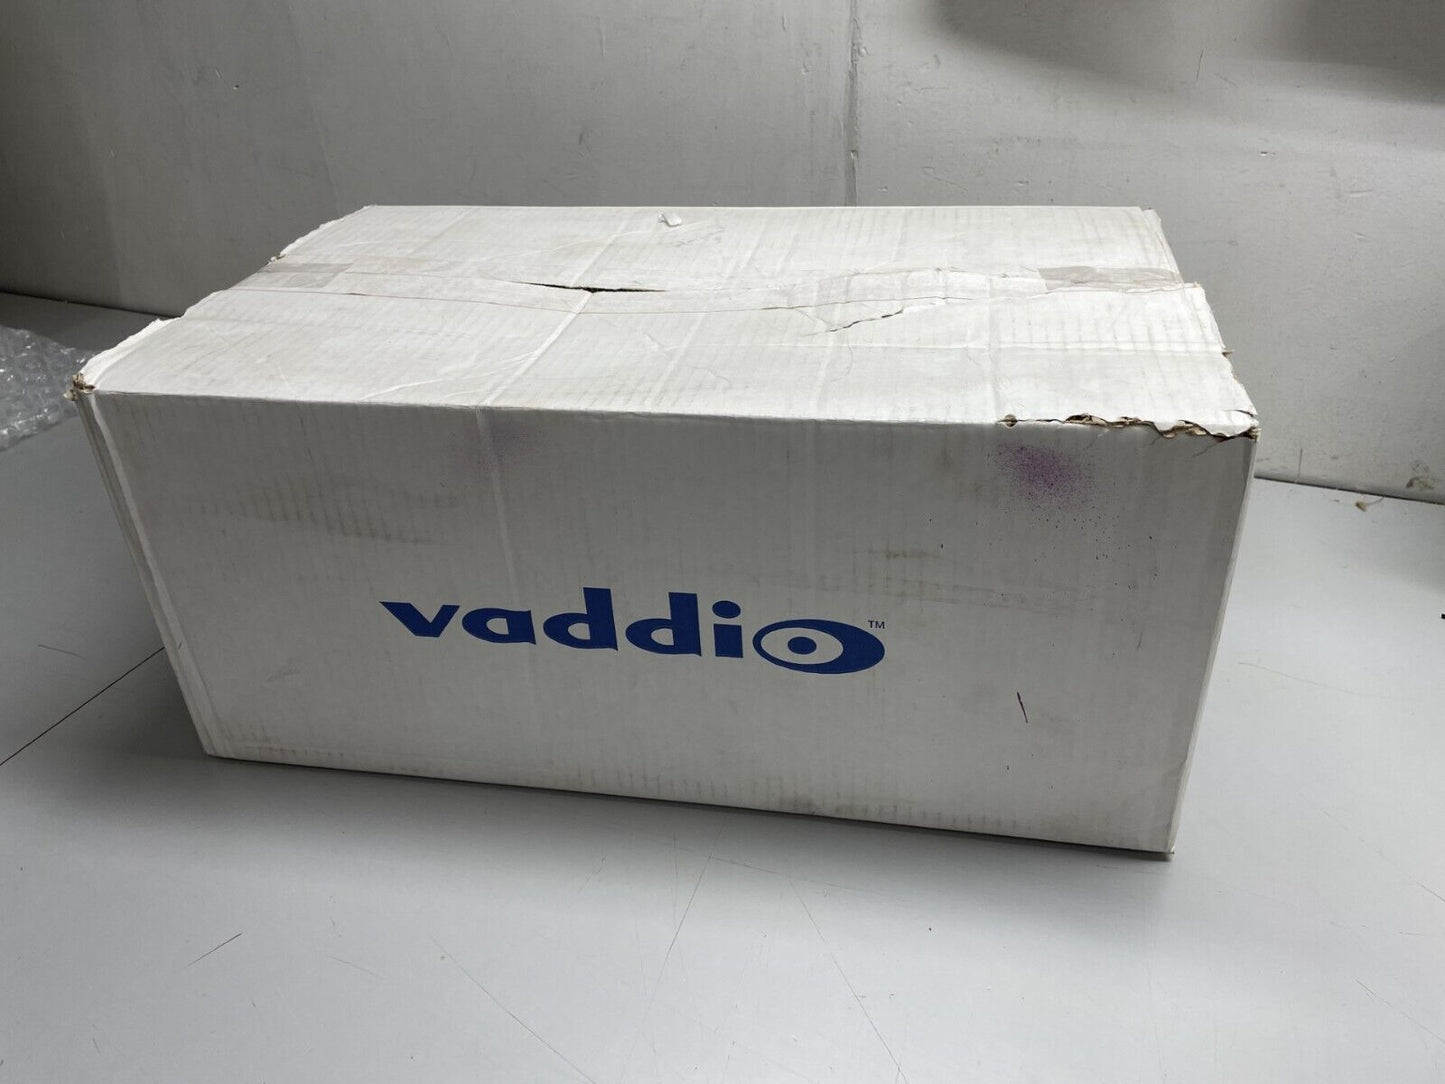 Vaddio PCC Premier Series Precision PTZ Network Camera Controller 999-5750-000